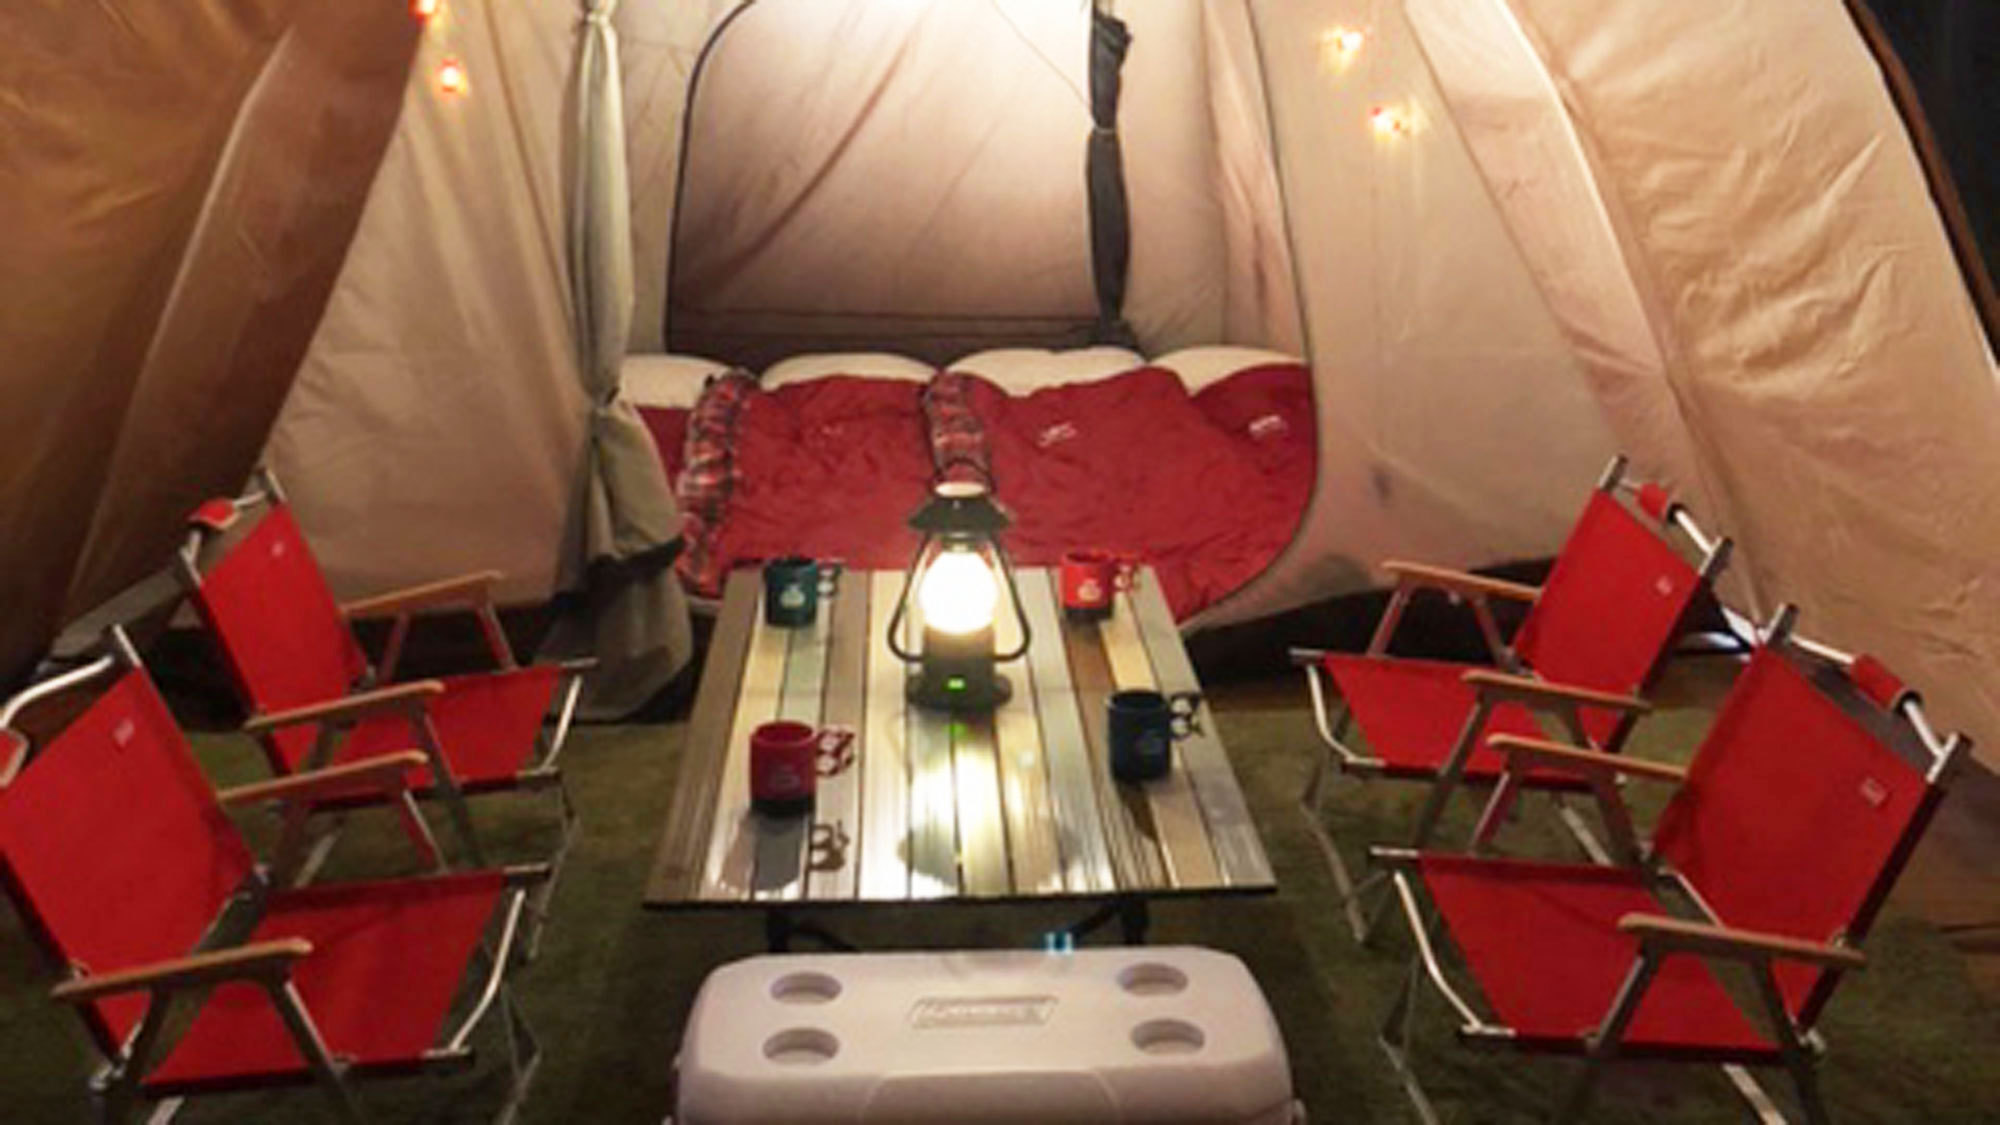 ≪1日1組限定≫【素泊まり】室内テントで快適に♪新しいキャンプスタイル≪室内グランピング体験≫